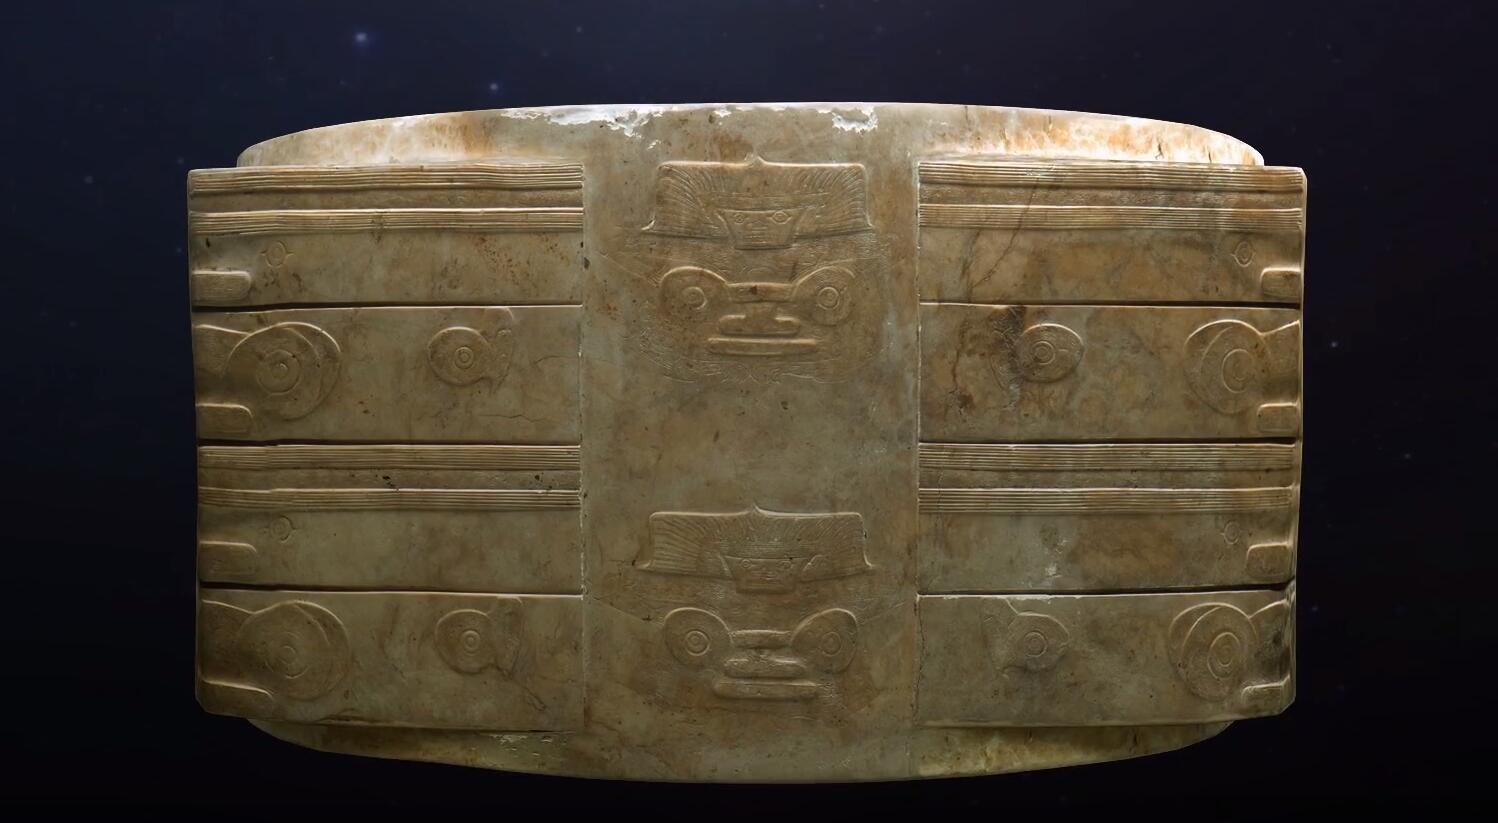 琮王，良渚文化玉器中品质最佳、体量最大、雕琢最为精美的玉琮，重达6.5千克